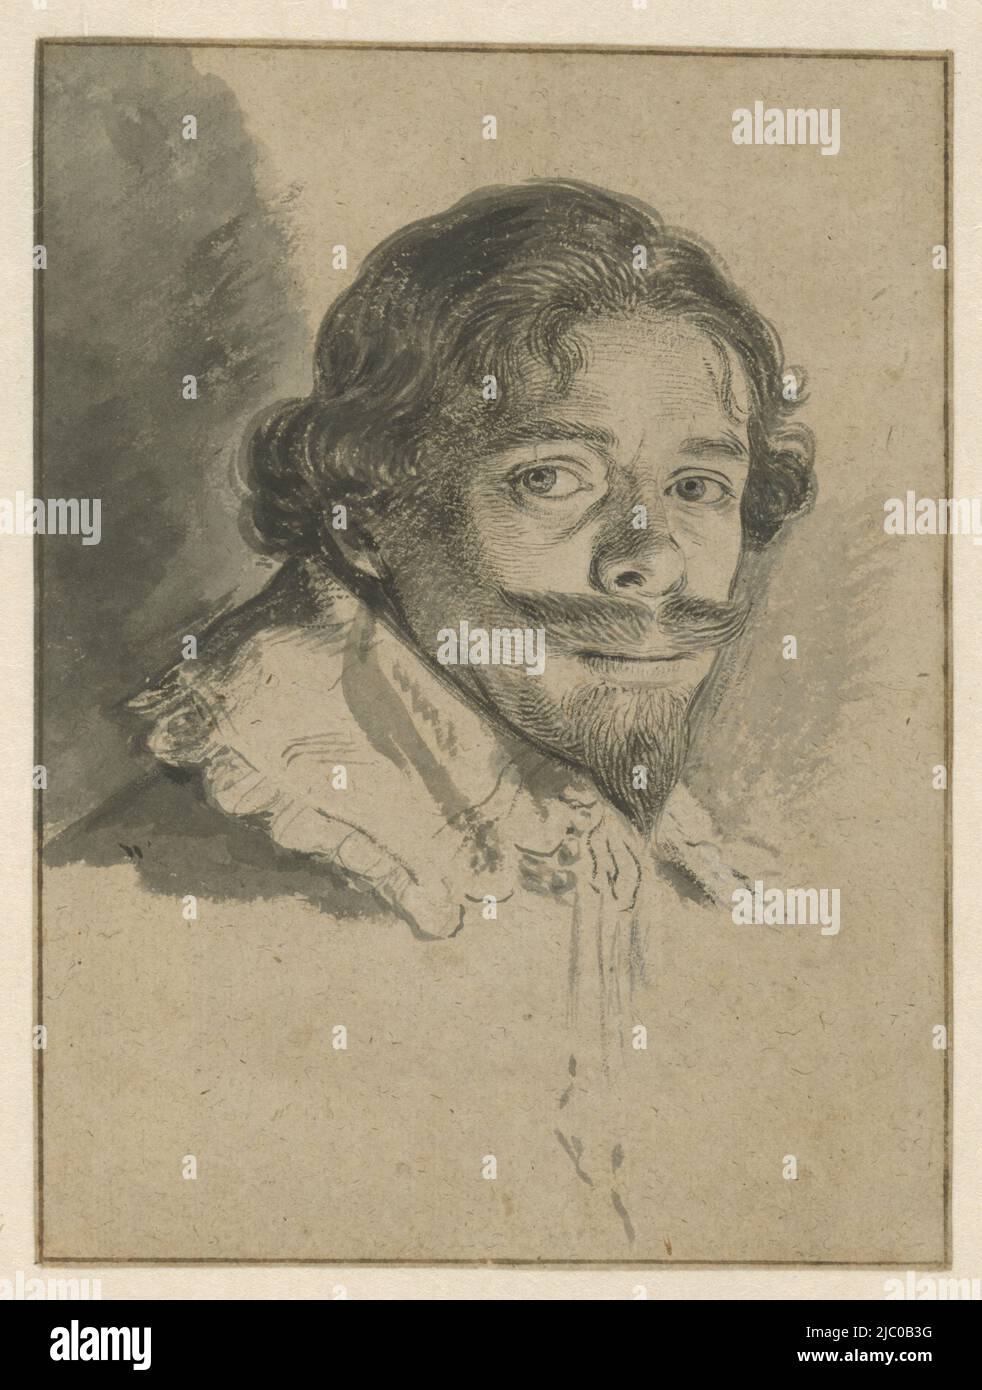 Autoritratto di David Bailly, disegnatore: David Bailly, 1626, carta, pennello, a 164 mm x l 122 mm Foto Stock